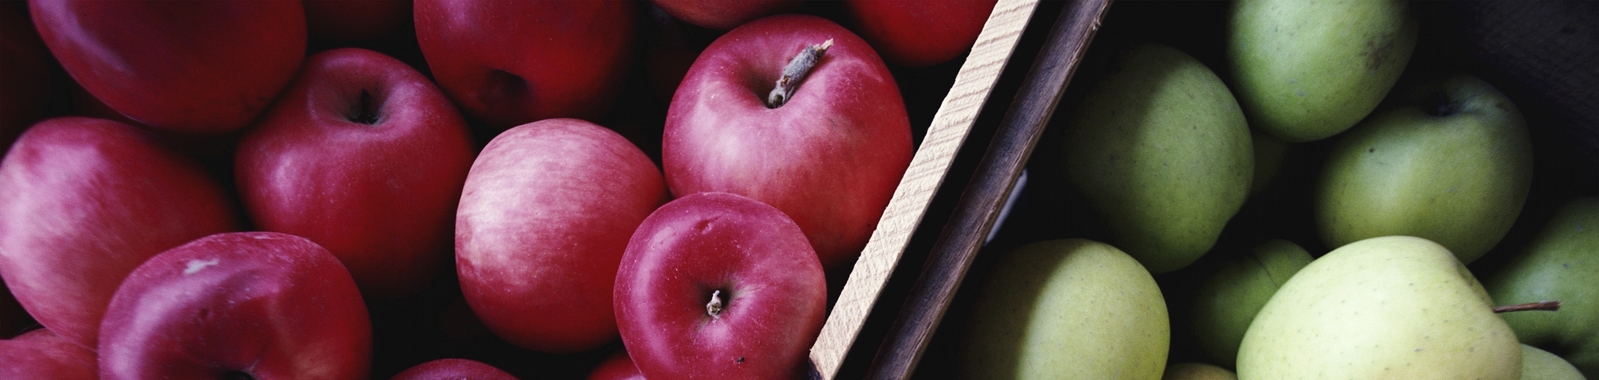 Apple and pear nutritional summary